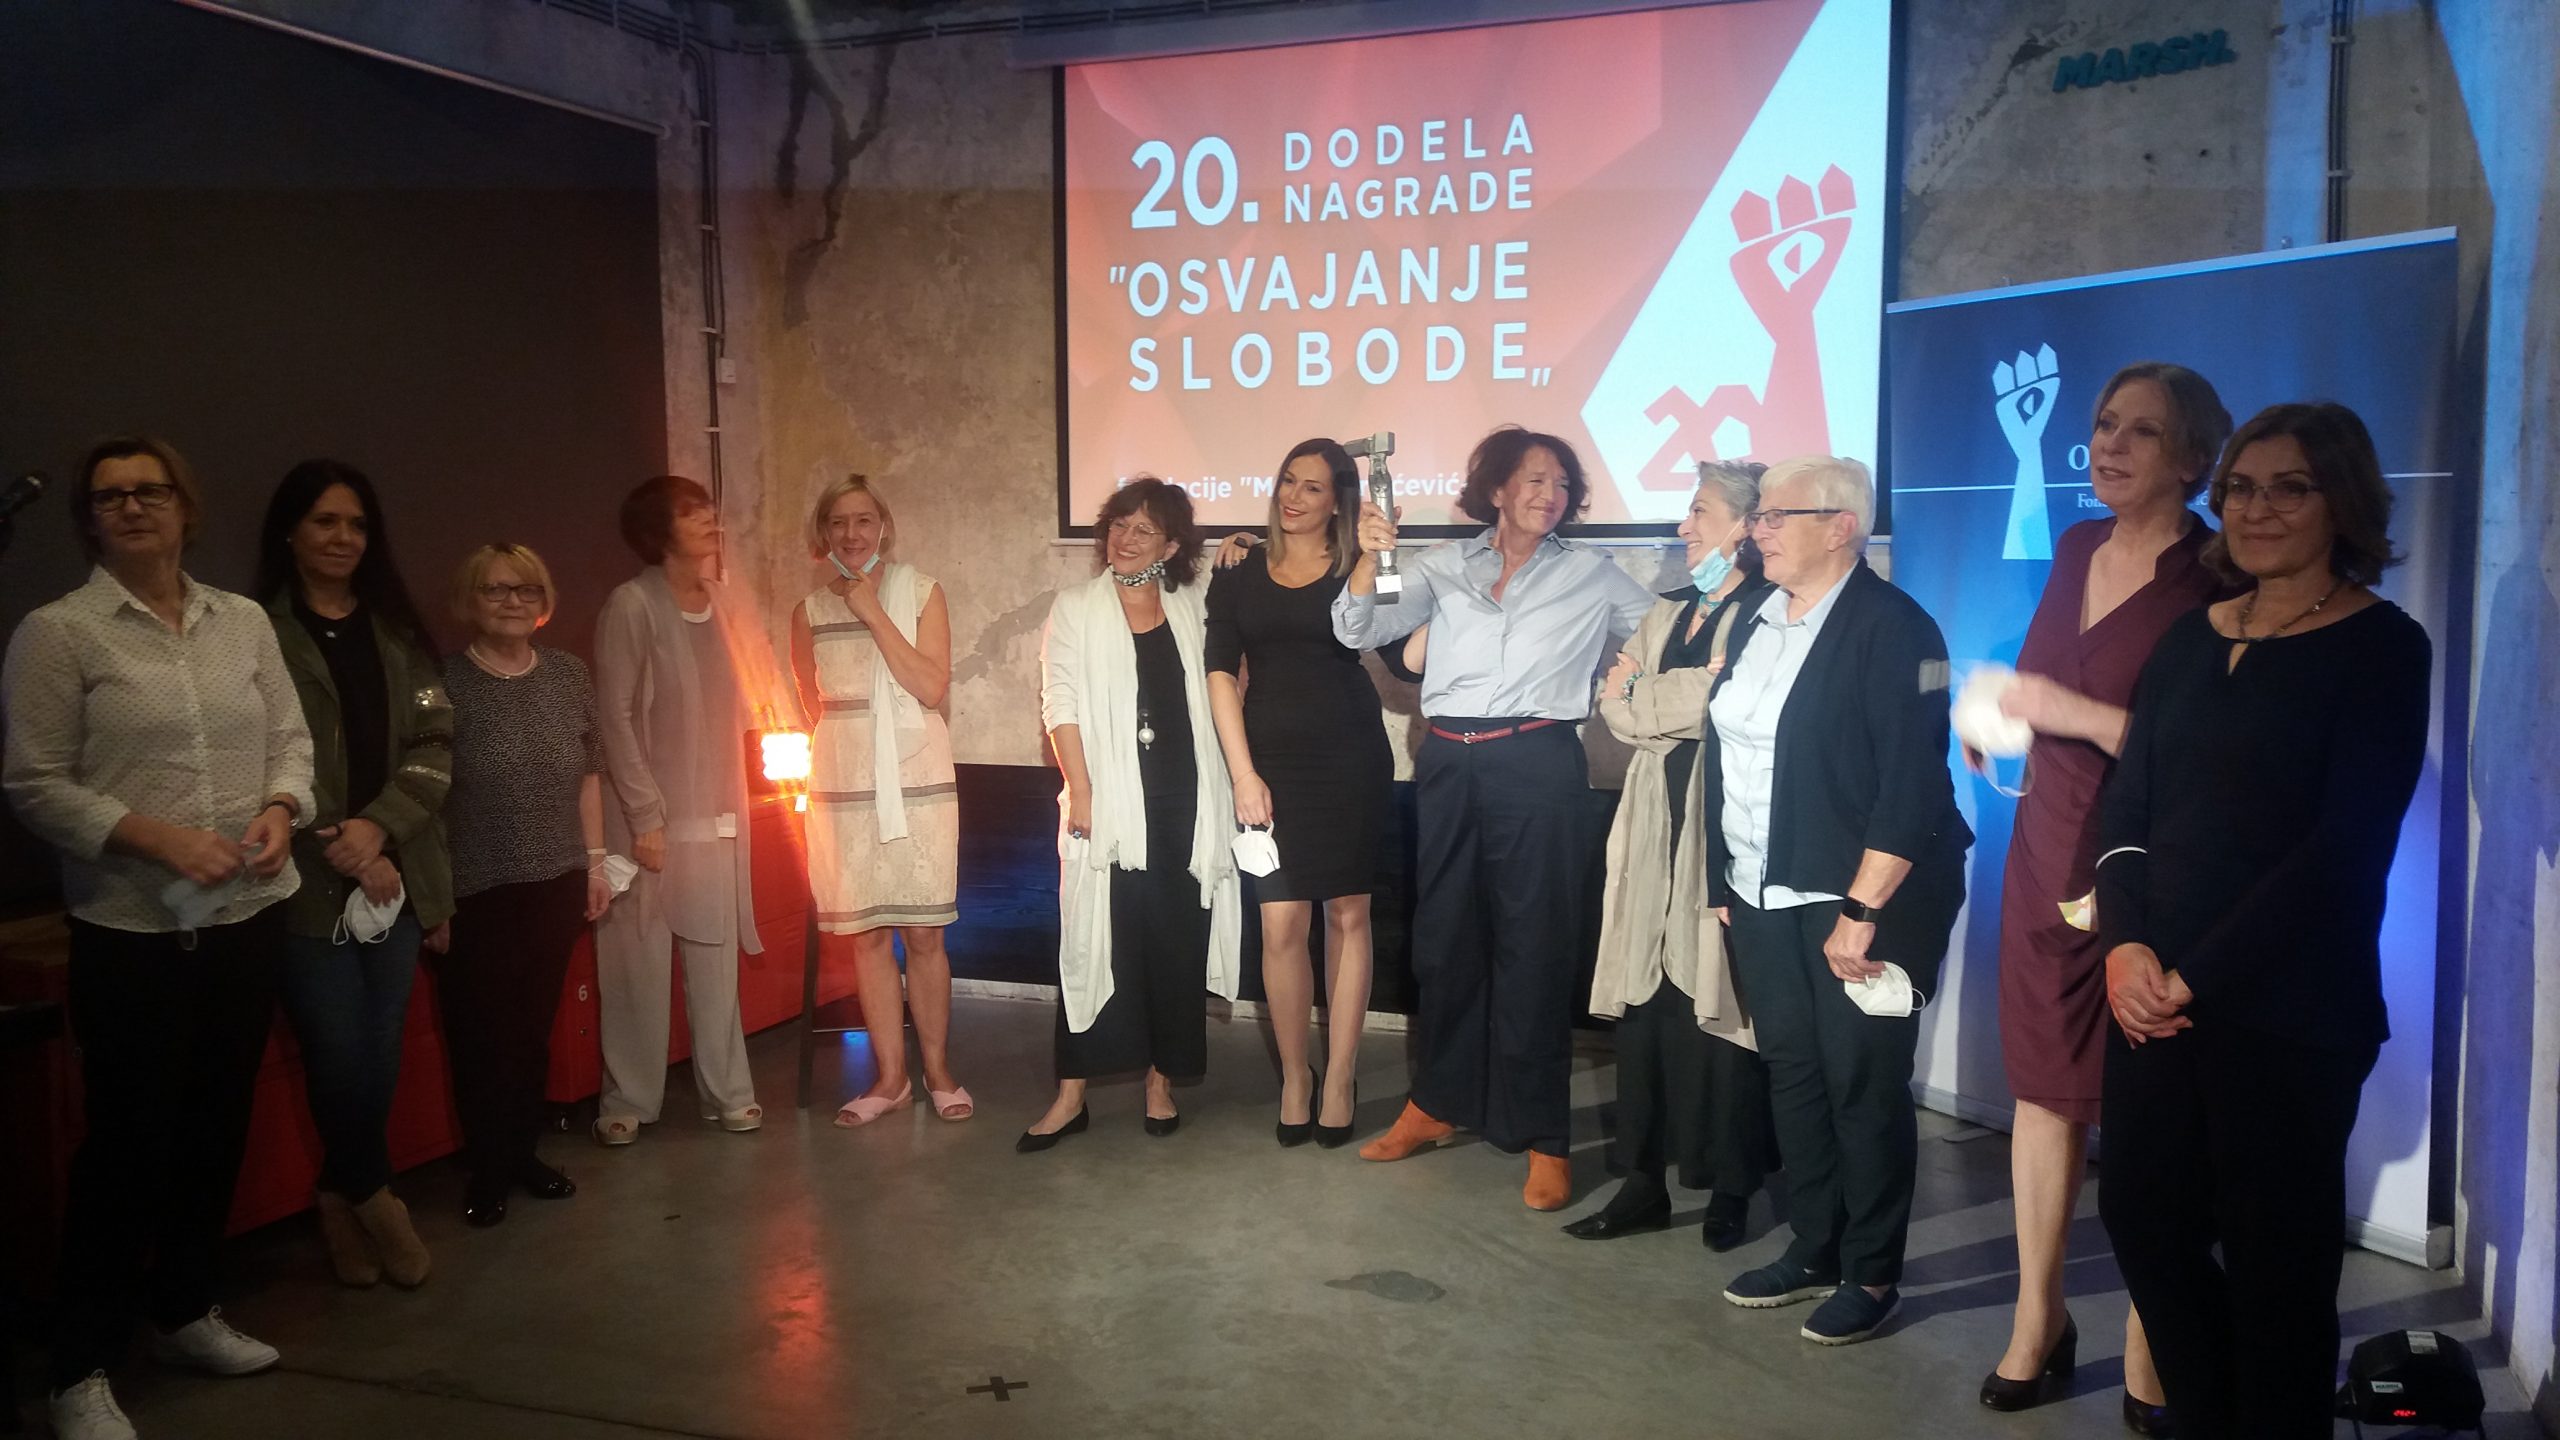 Nagrada "Osvajanje slobode" uručena Vesni Rakić Vodinelić 1